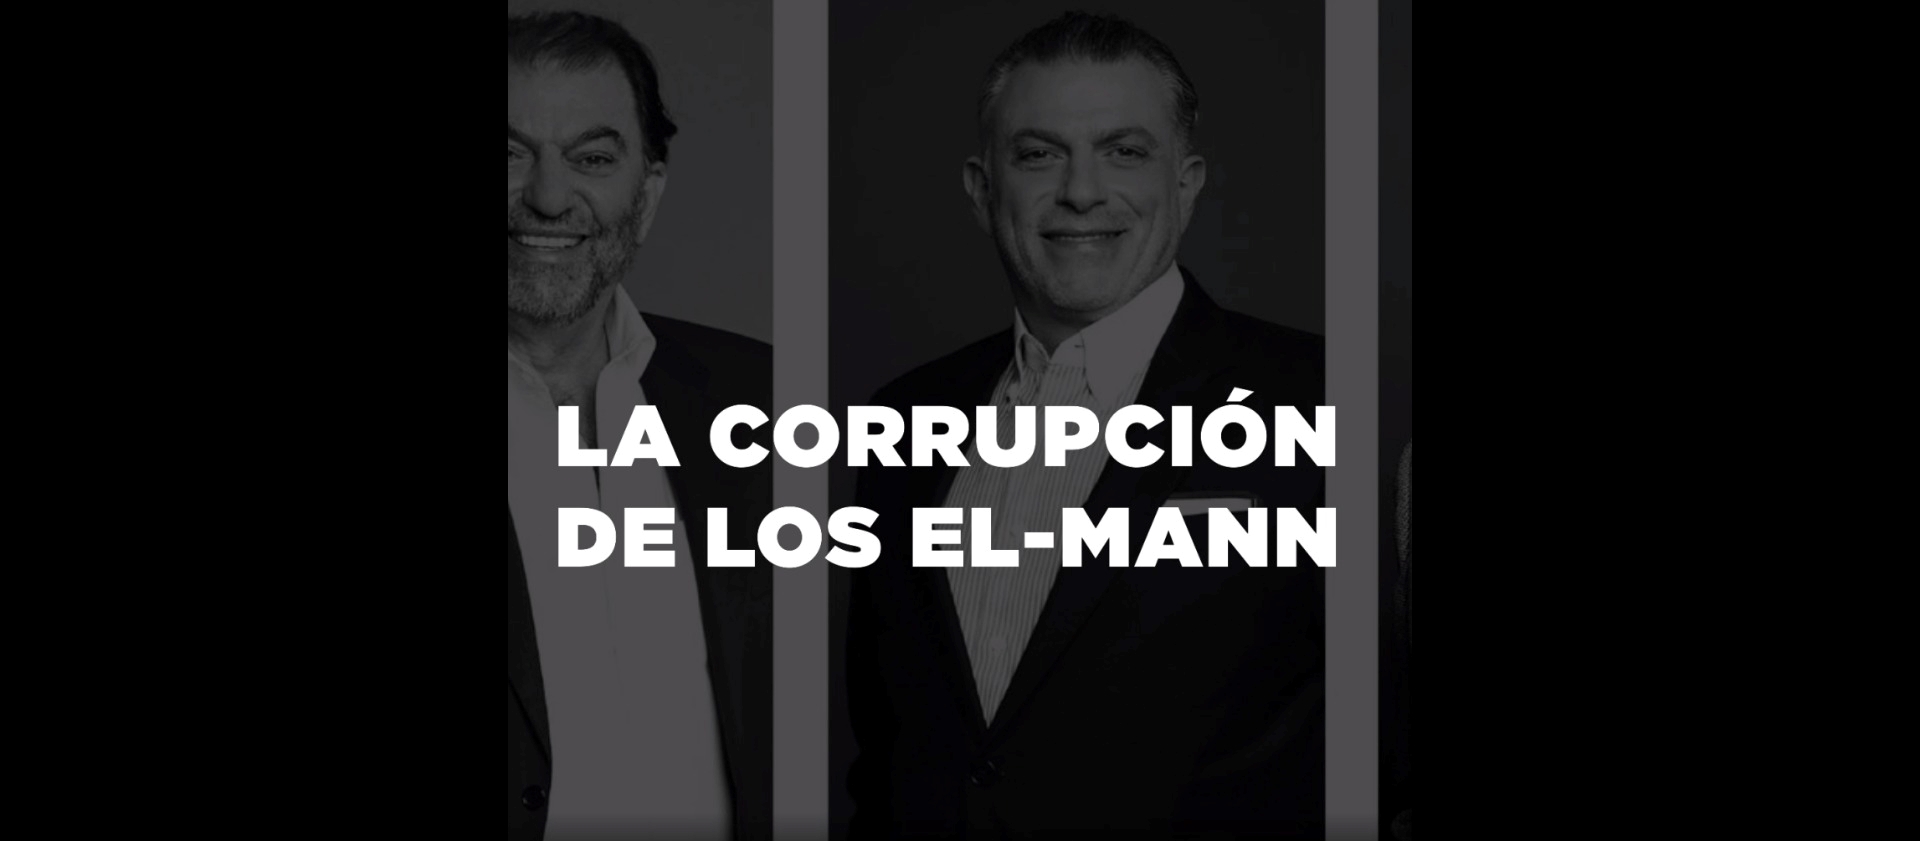 La corrupción de los El-Mann